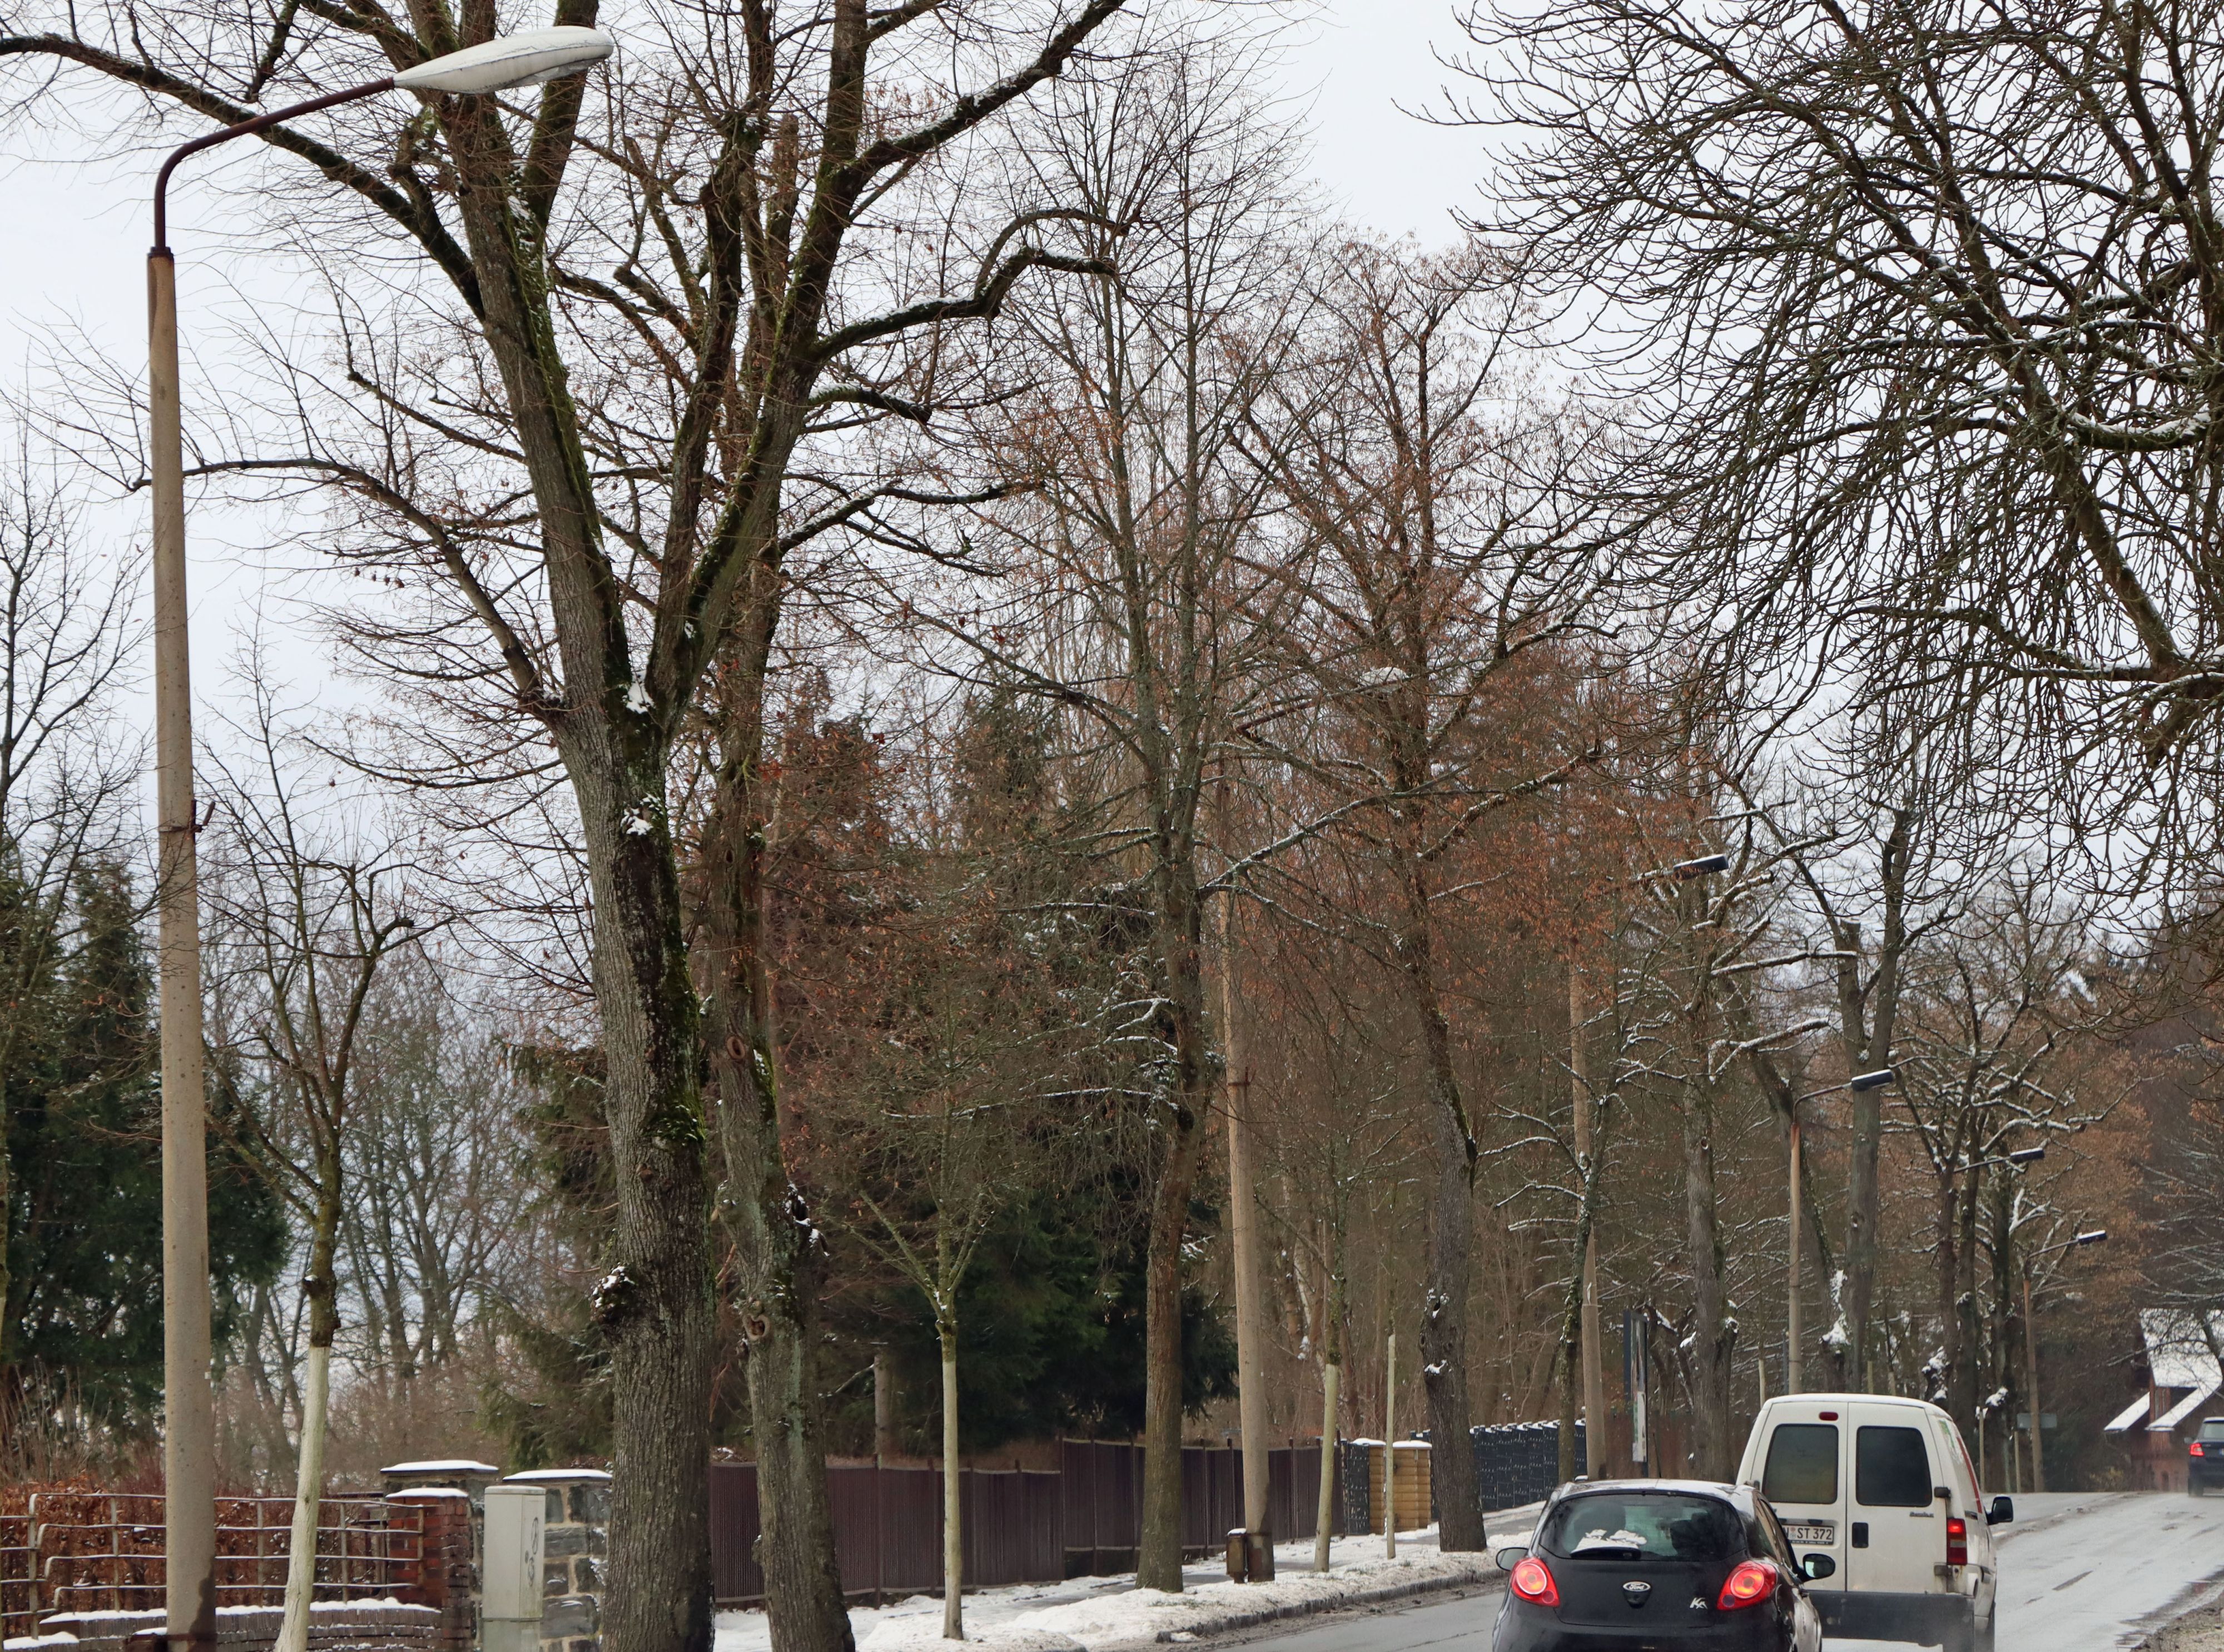 Auf einer Straßenseite stehen alte Straßen-Laternen und Bäume. Auf der Straße fahren Autos. Es ist Winter.